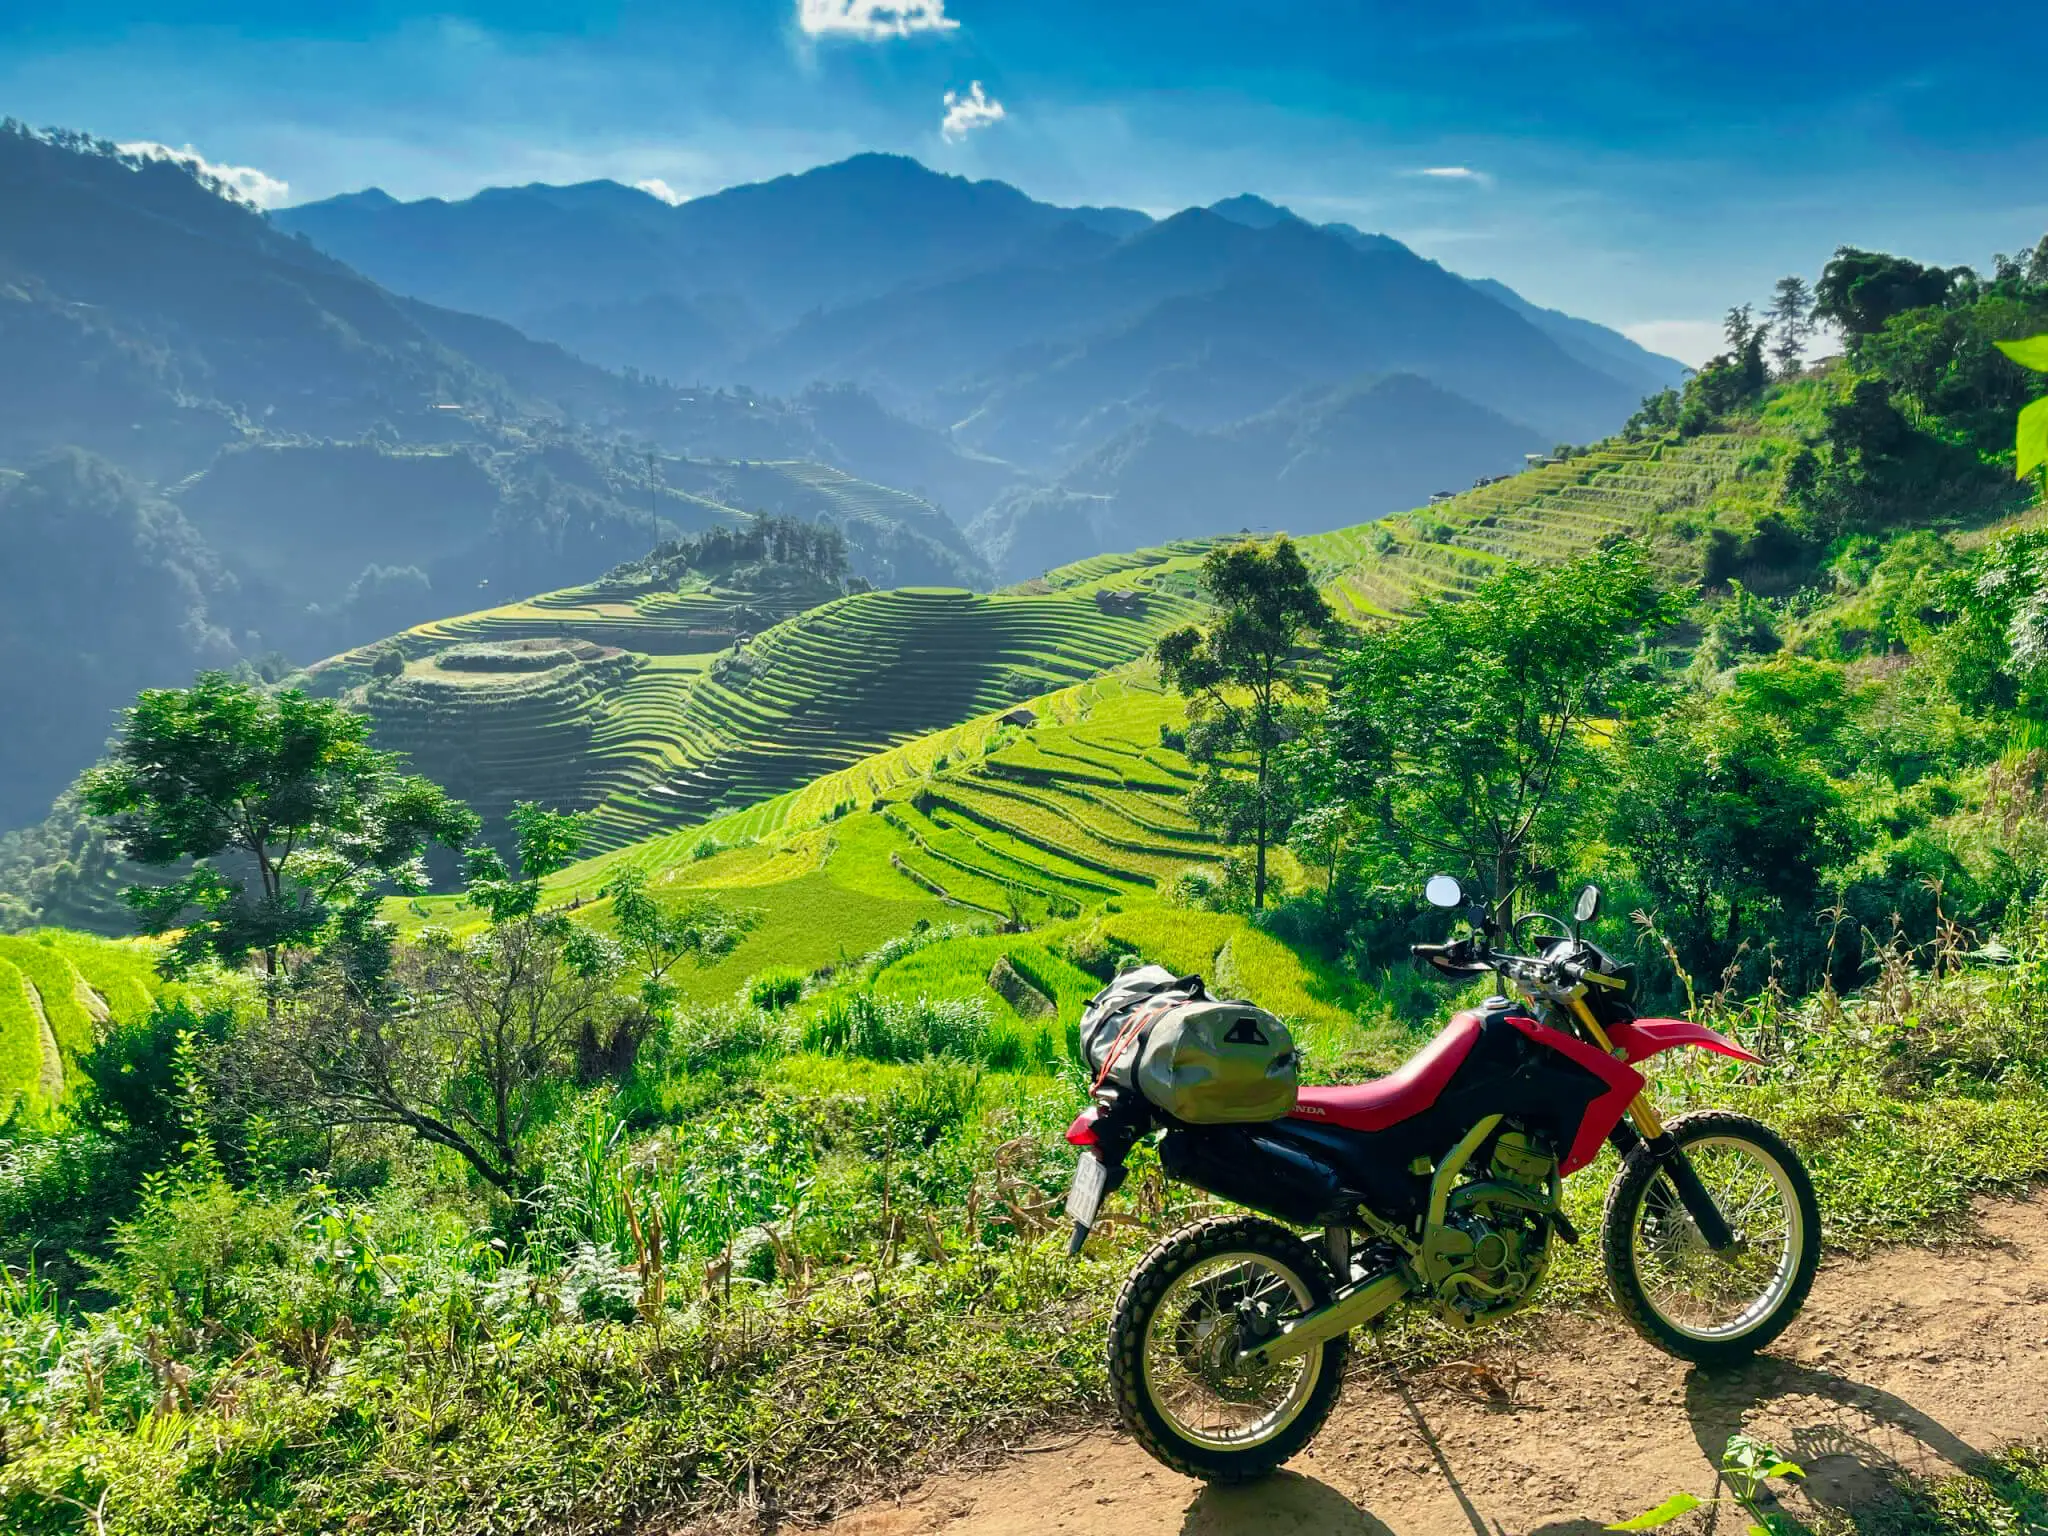 Northern Vietnam Motorbike Tour | Duration 8 DAYS